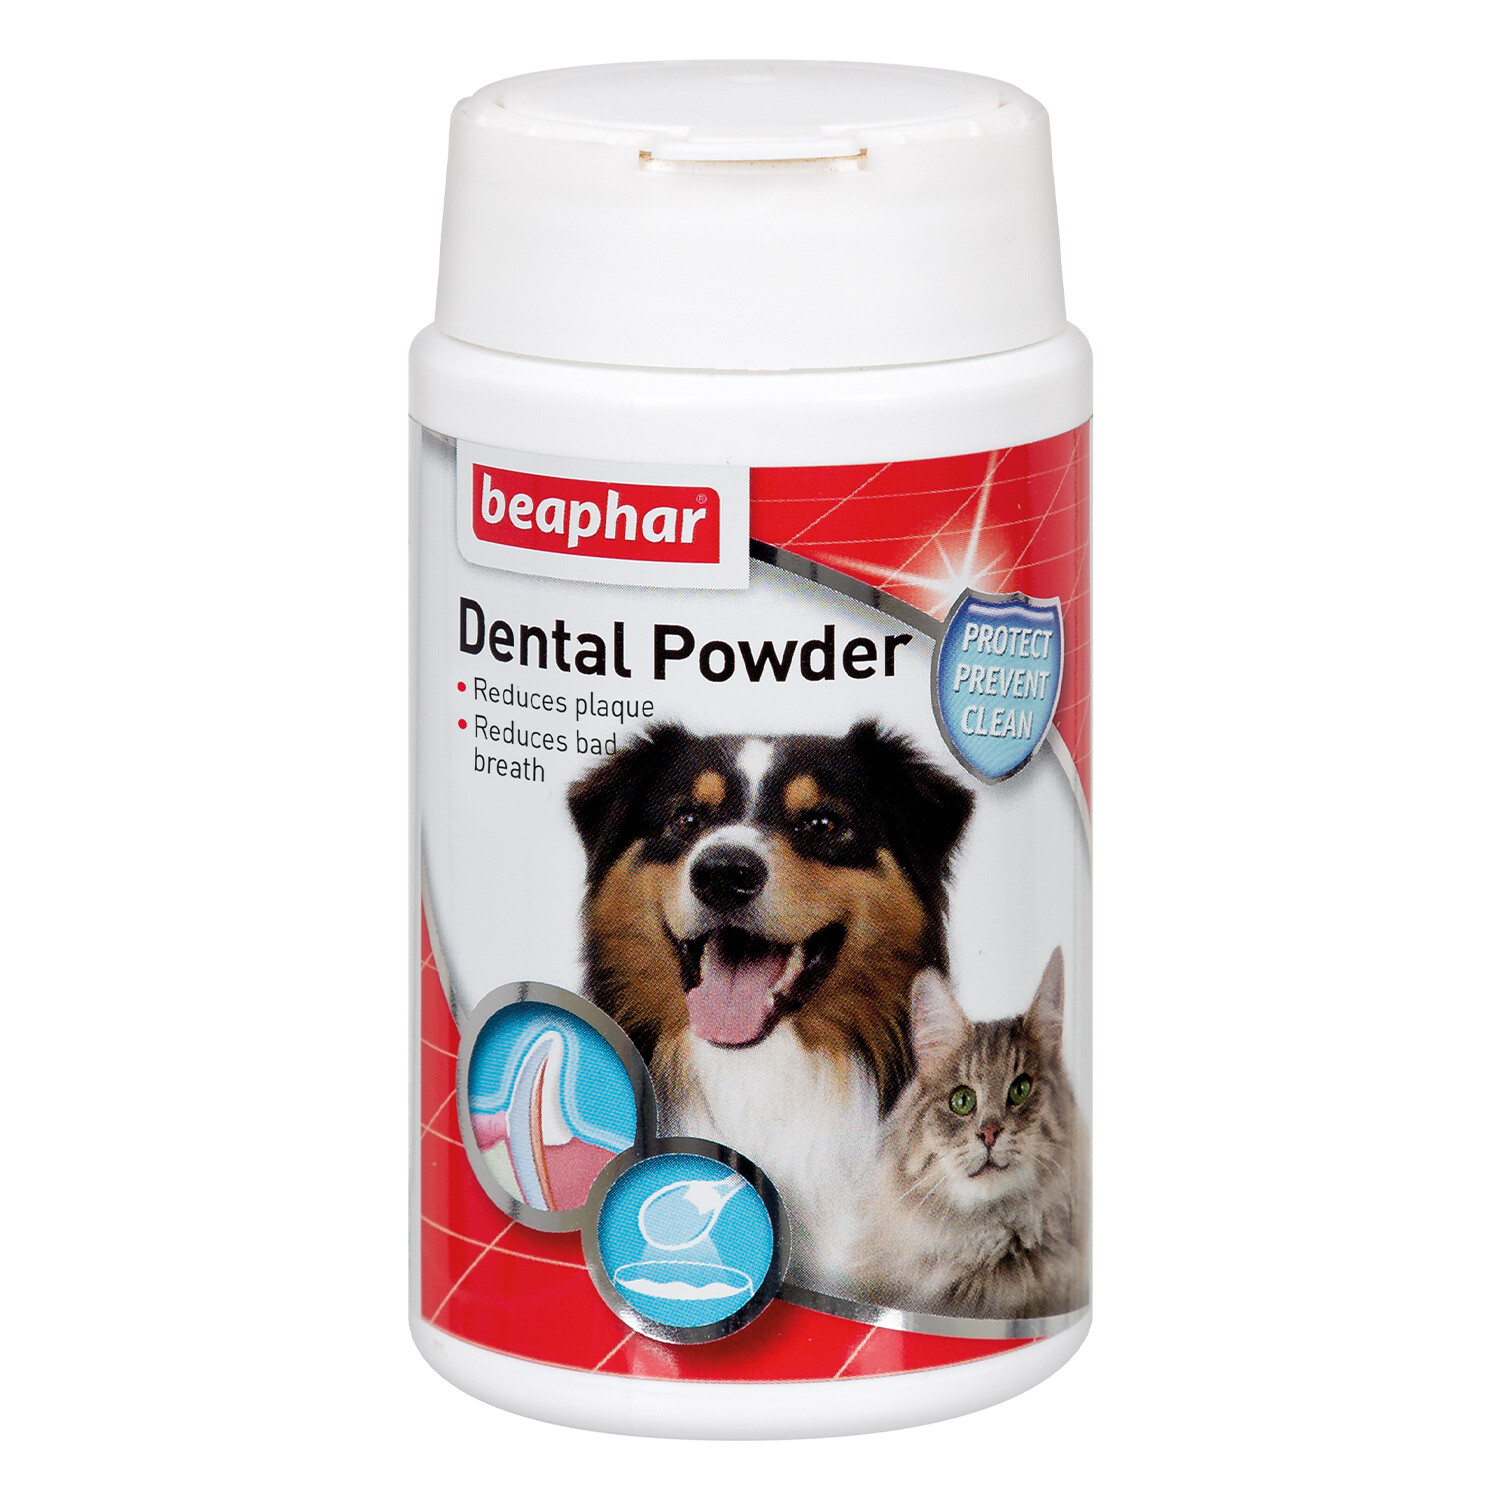 Beaphar Dental Powder Image